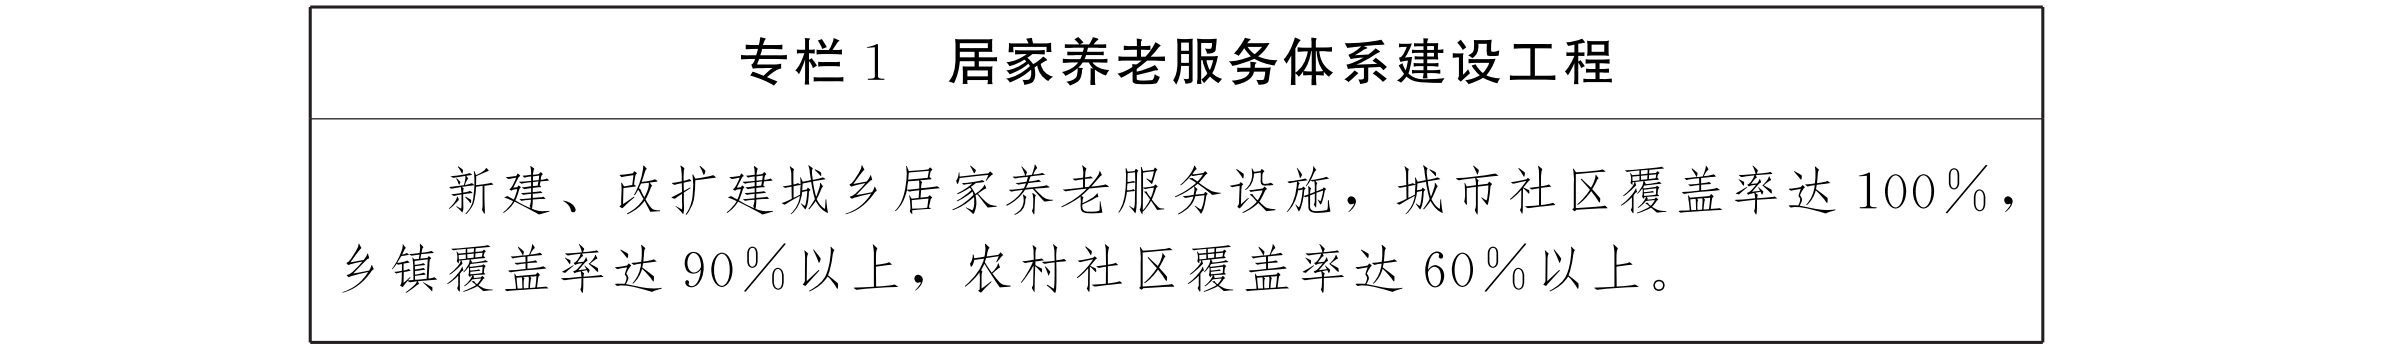 云南省人民政府办公厅关于印发云南省养老服务体系建设“十三五”规划的通知_05.png